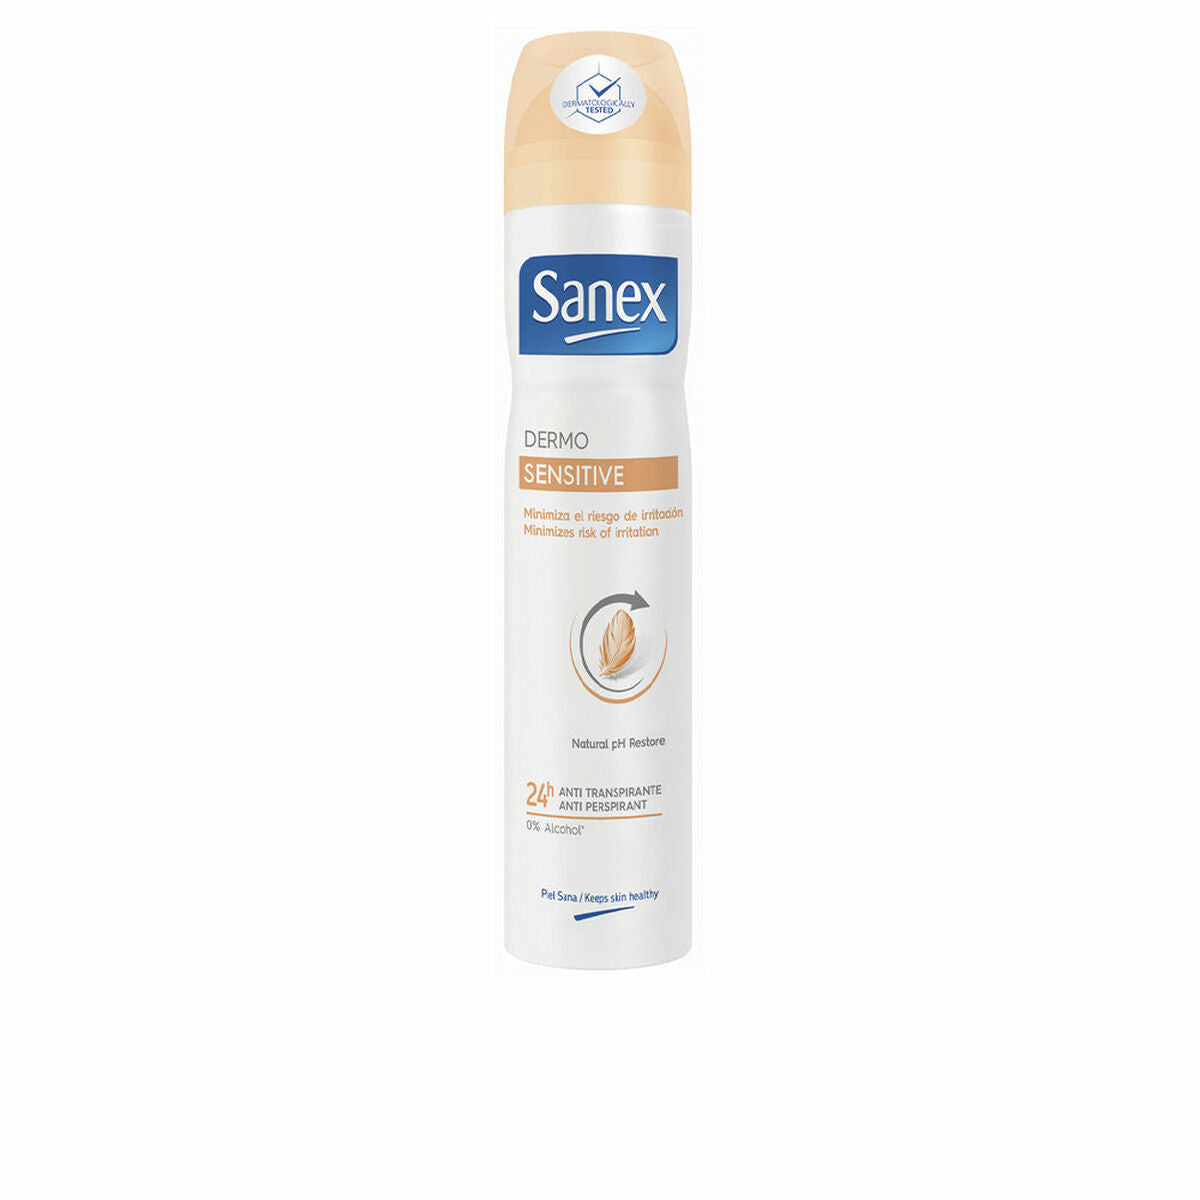 Ψεκάστε το αποσμητικό Sanex Dermo Sensitive 200 ml